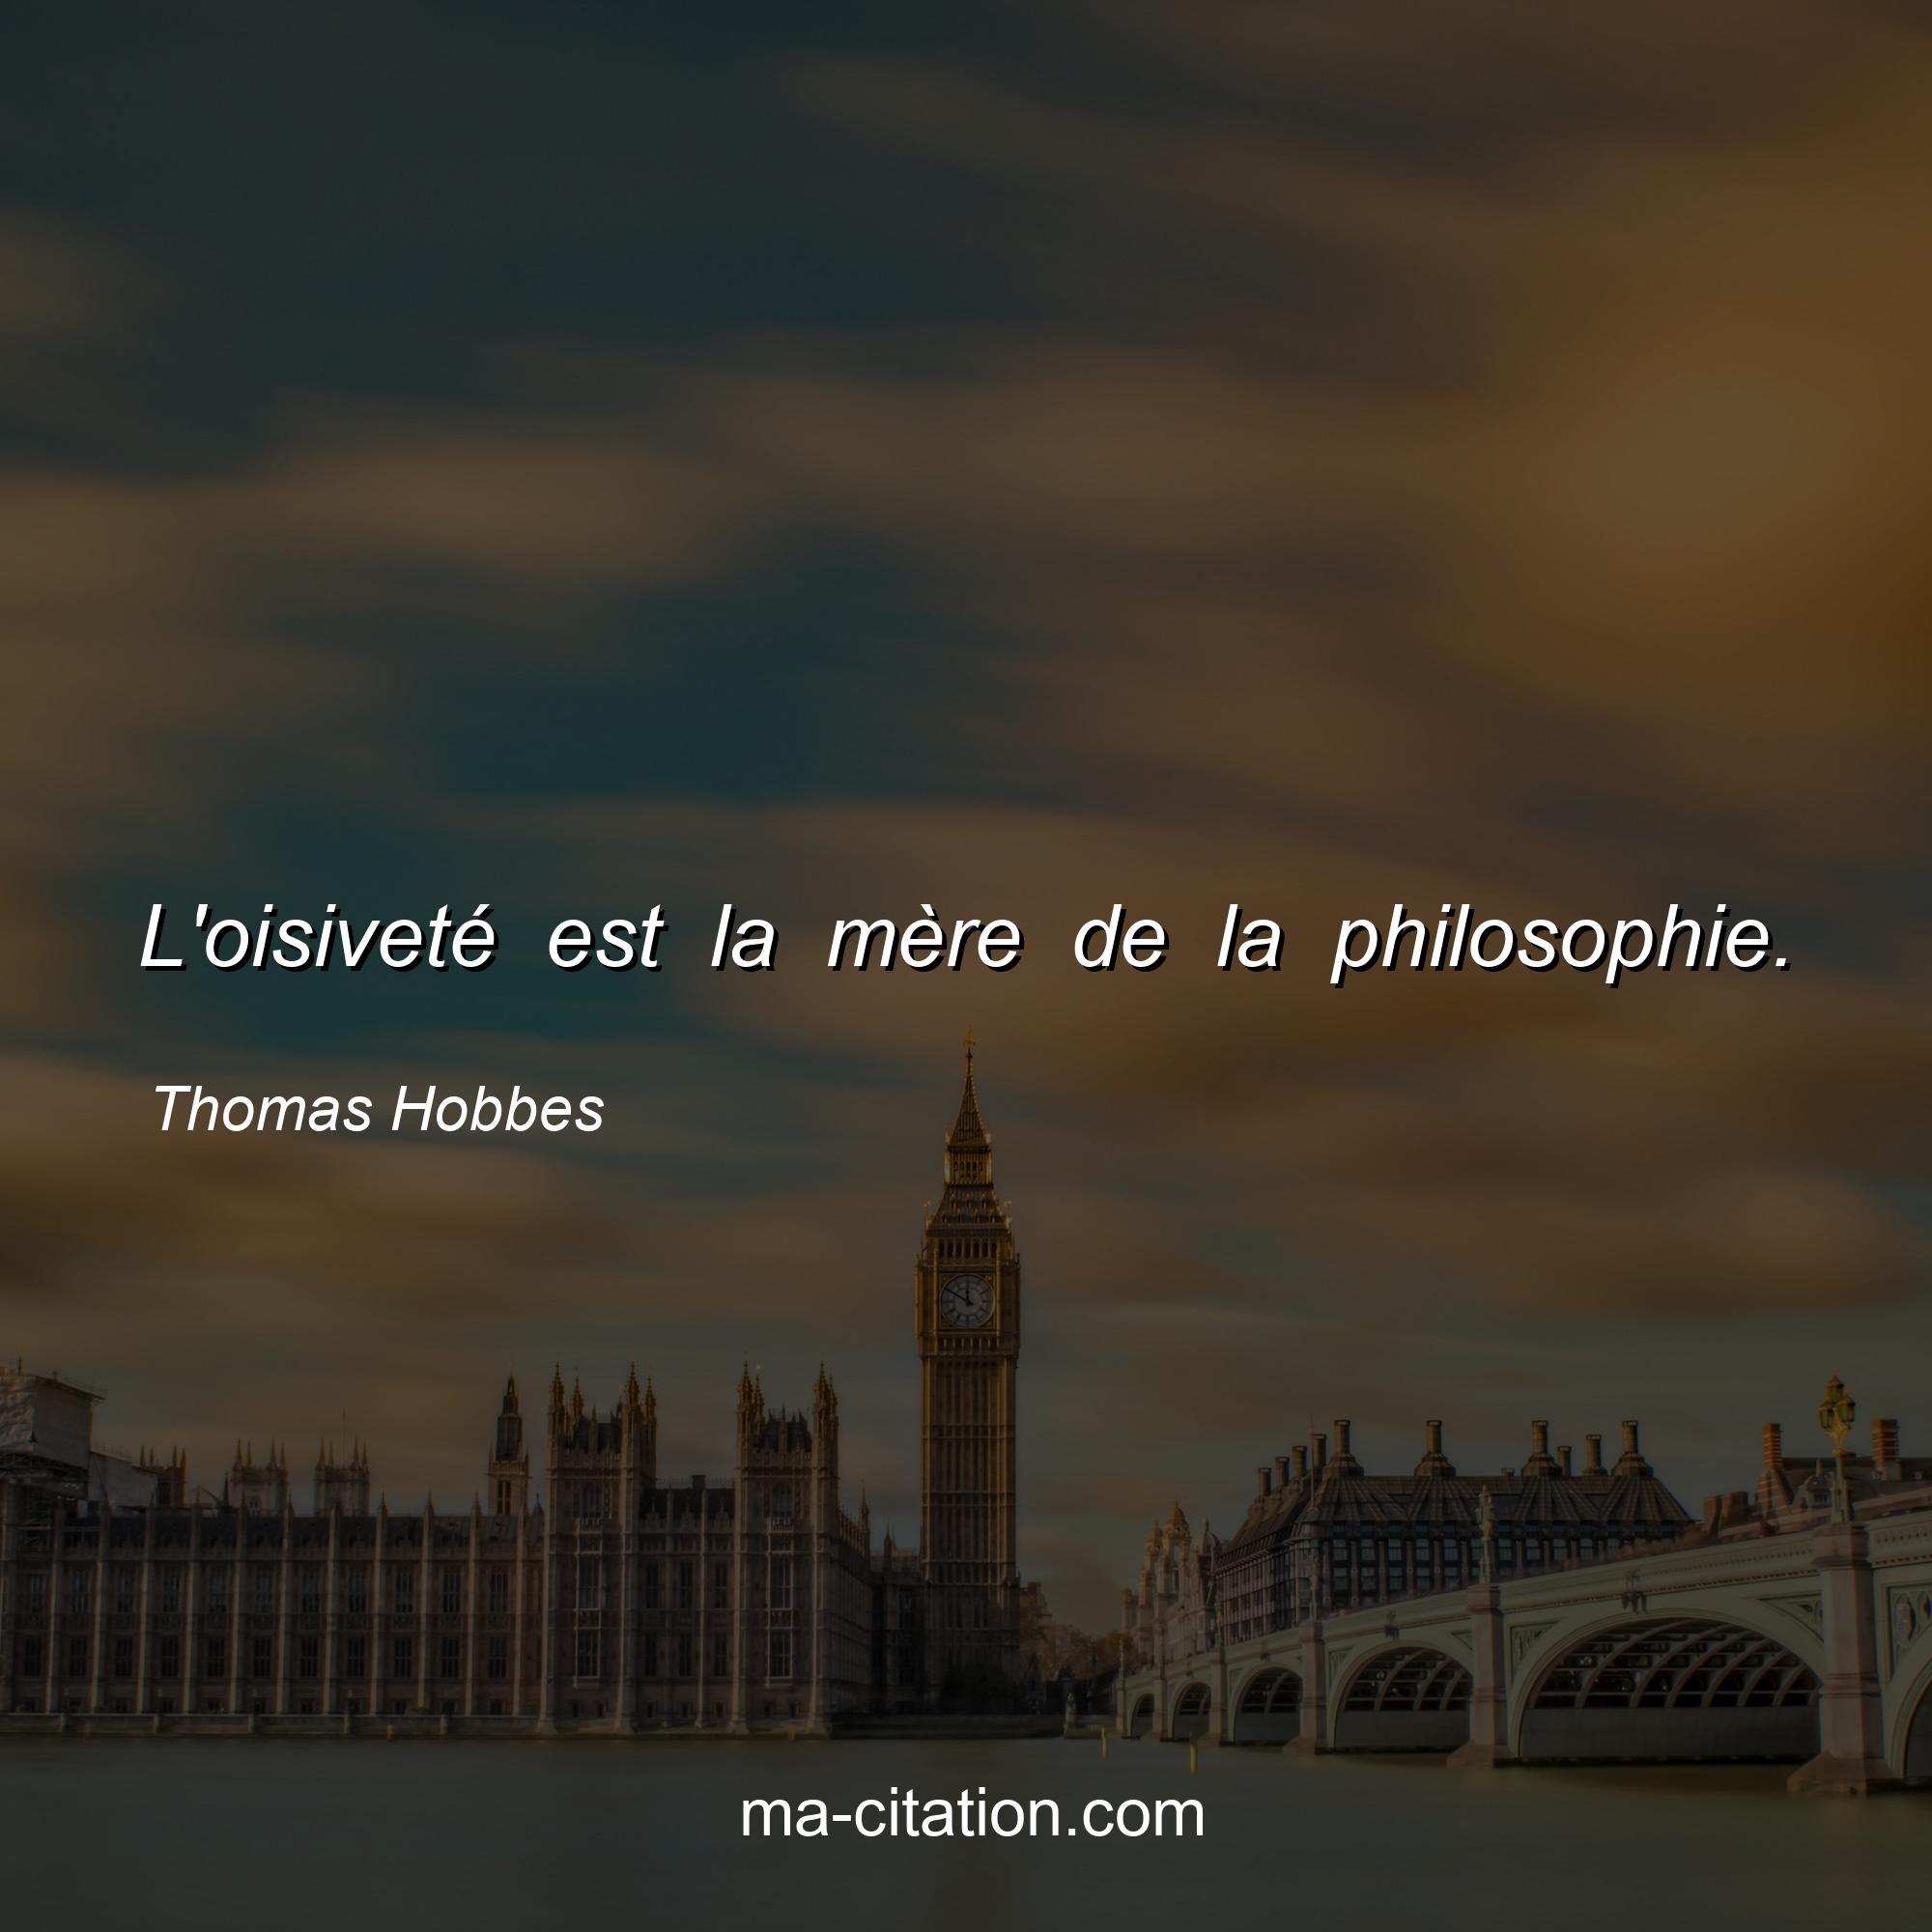 Thomas Hobbes : L'oisiveté est la mère de la philosophie.